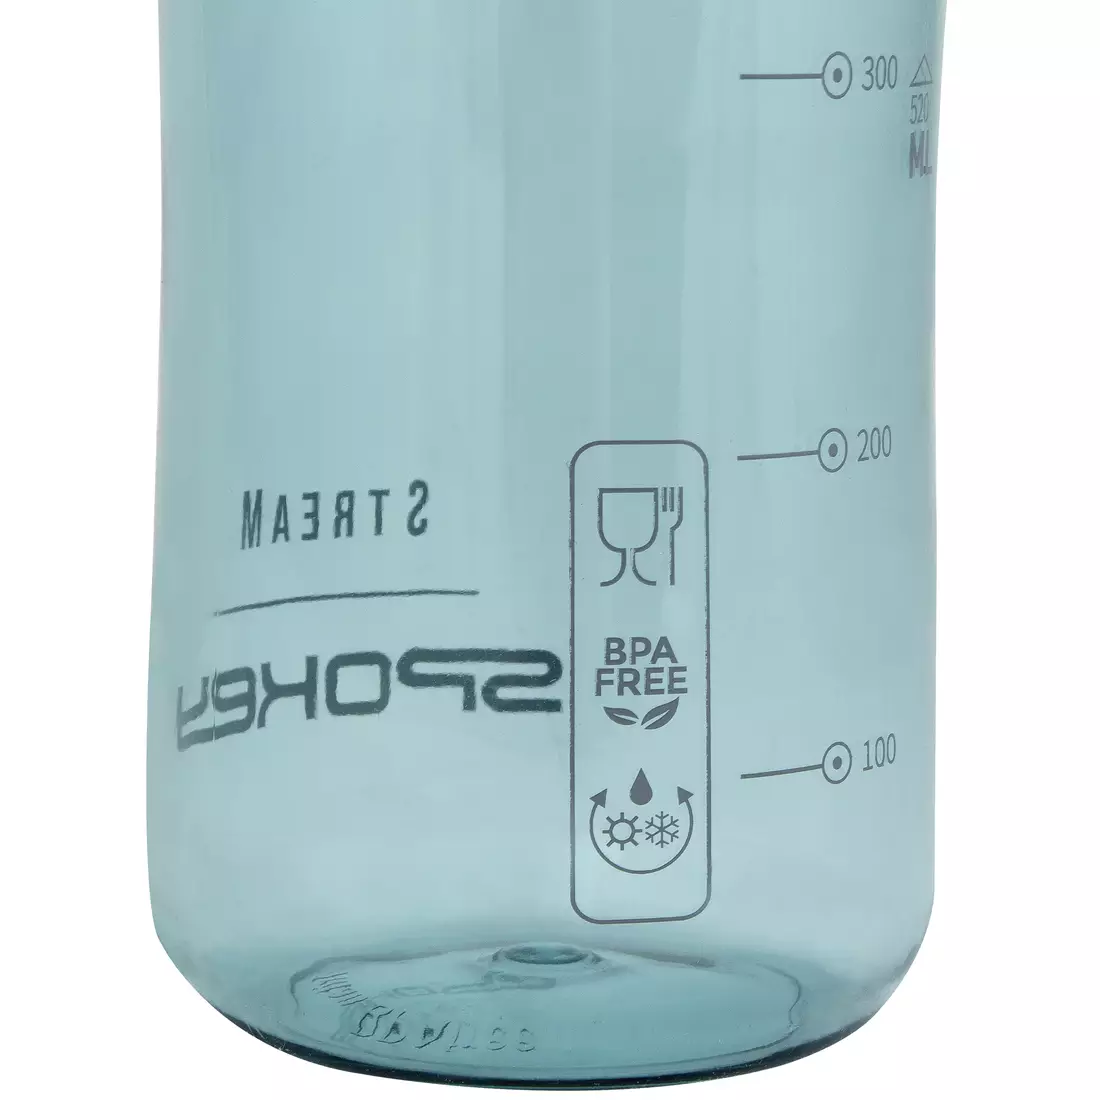 SPOKEY STREAM Wasserflasche 0.5 L Türkis